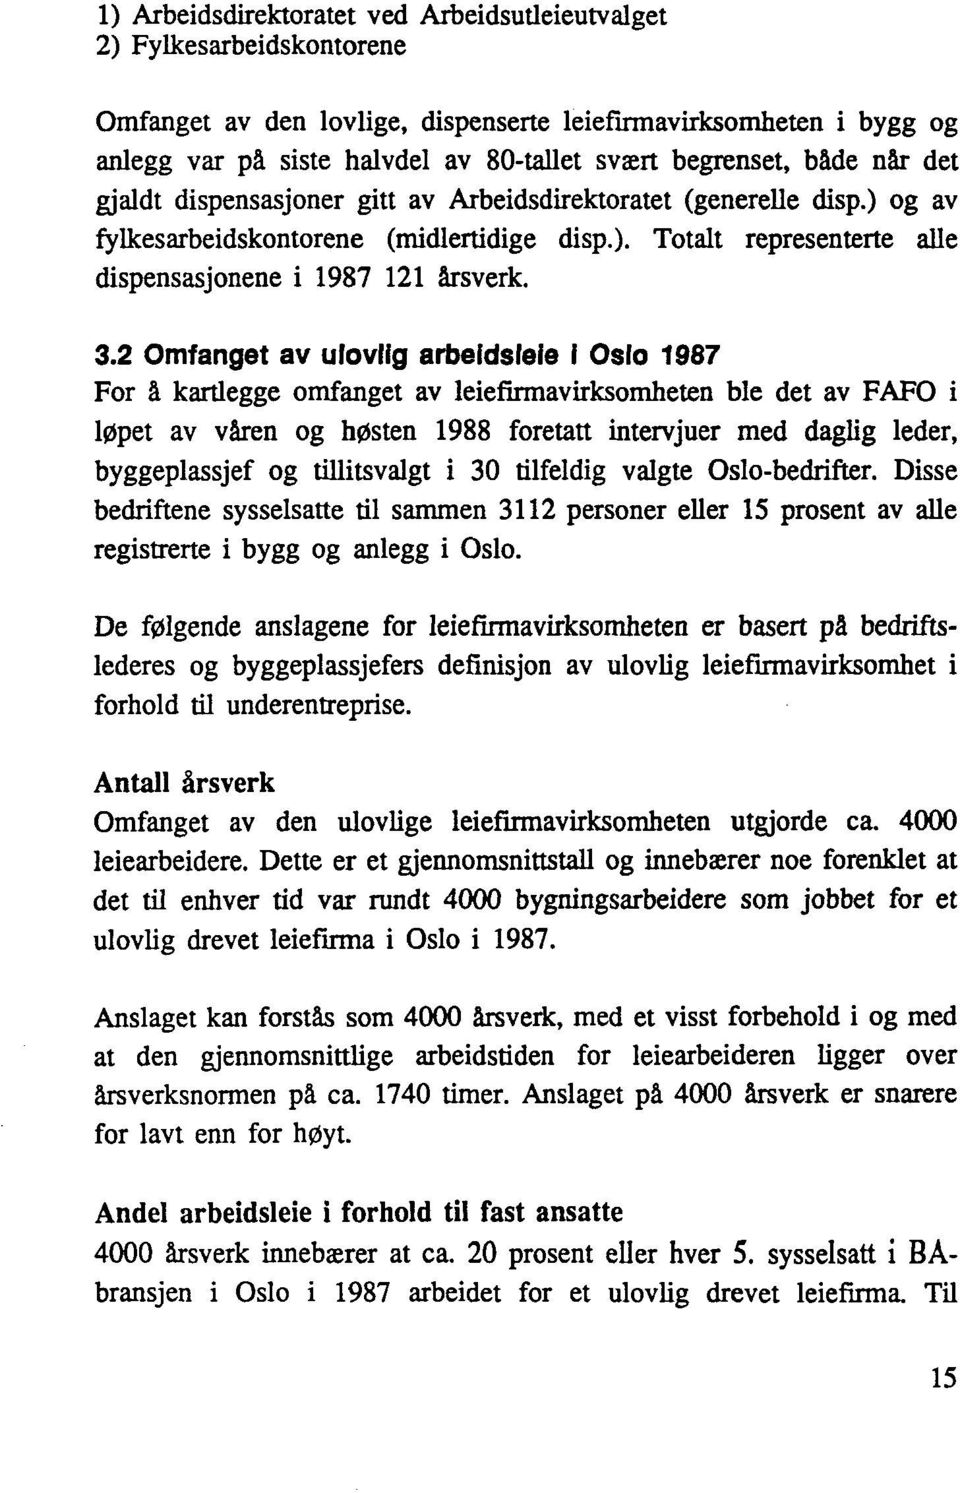 3.2 Omfanget av ulovlig arbeidsleie I Oslo 1987 For å kartlegge omfanget av leiefirmavirksomheten ble det av FAFO i løpet av våren og høsten 1988 foretatt intervjuer med daglig leder, byggeplassjef